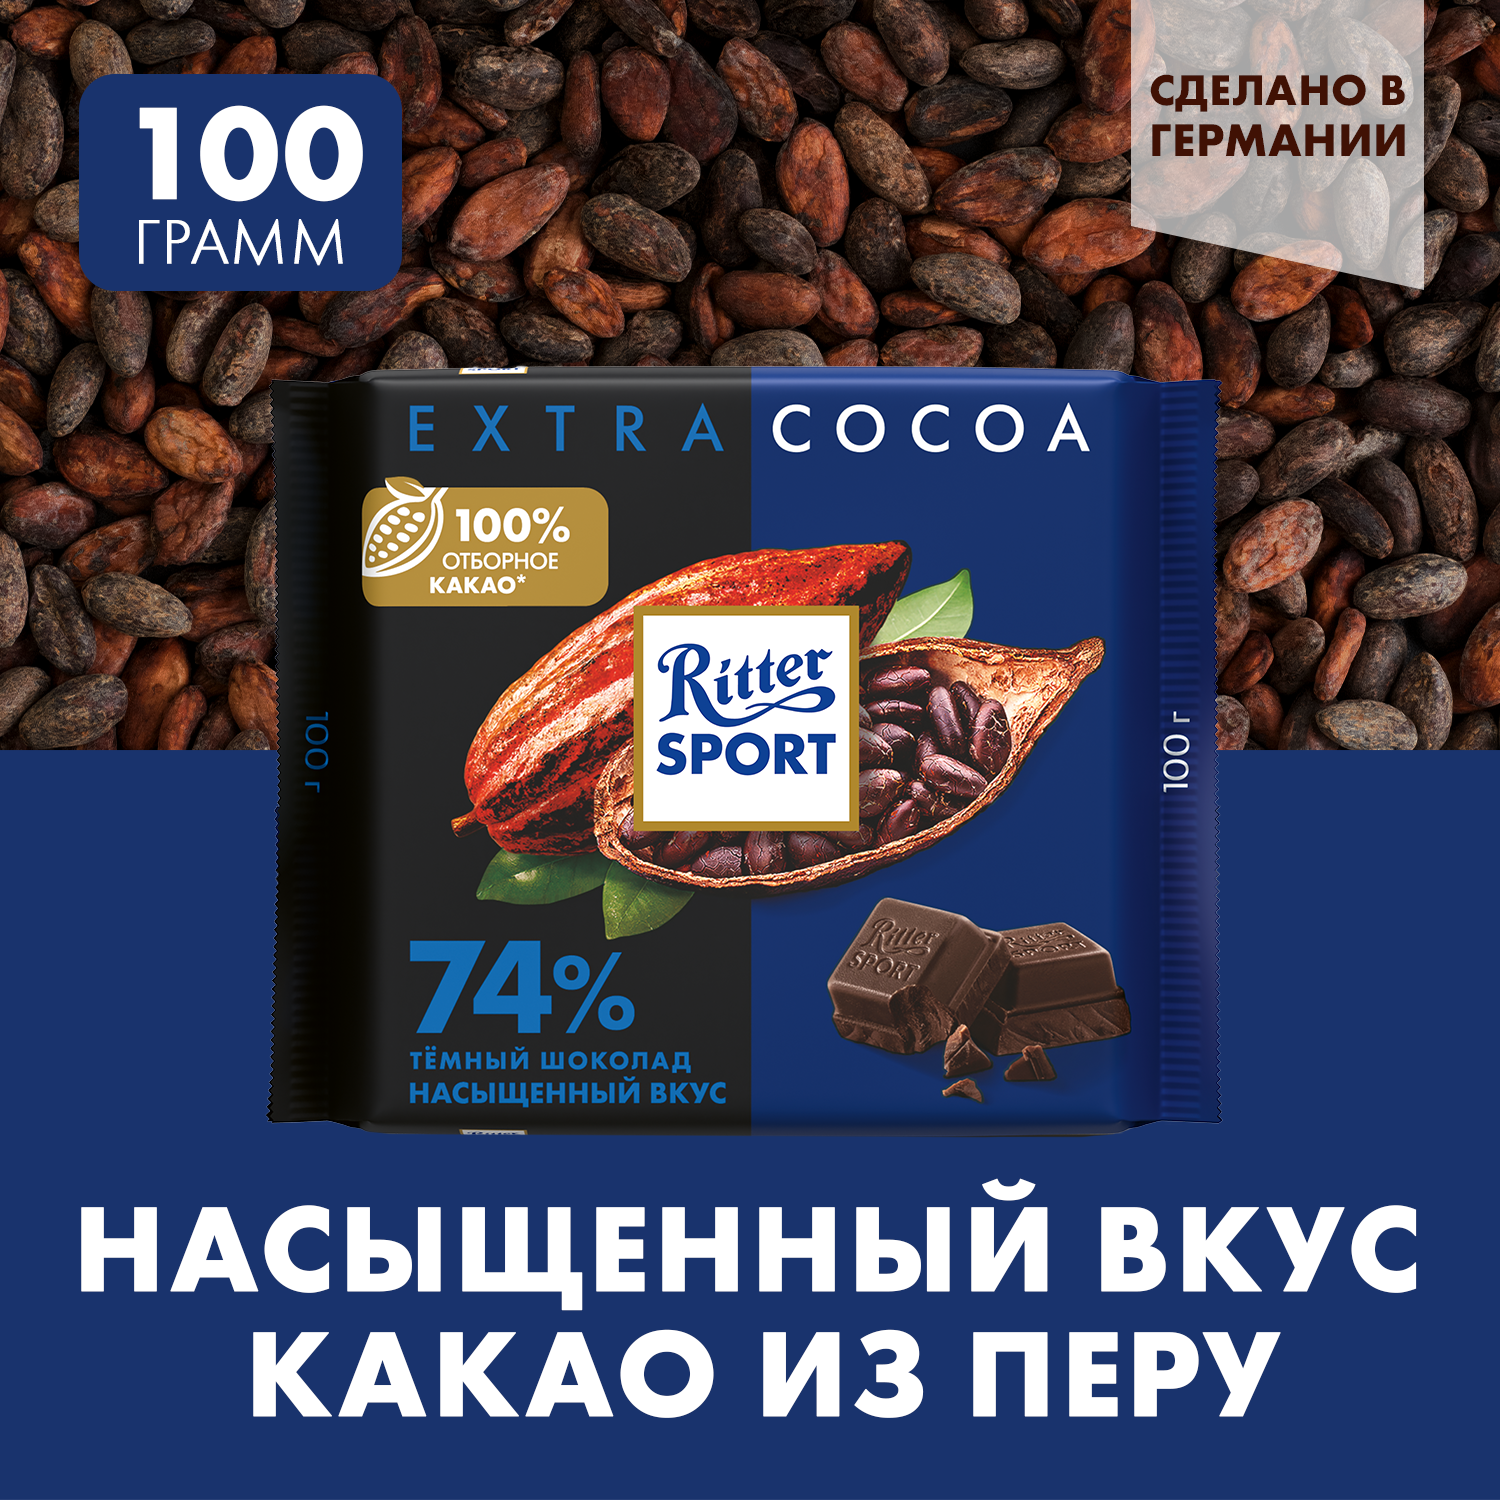 Шоколад Ritter Sport Темный с насыщенным вкусом из Перу 100г Alfred Ritter GmbH & Co.Kg - фото №1